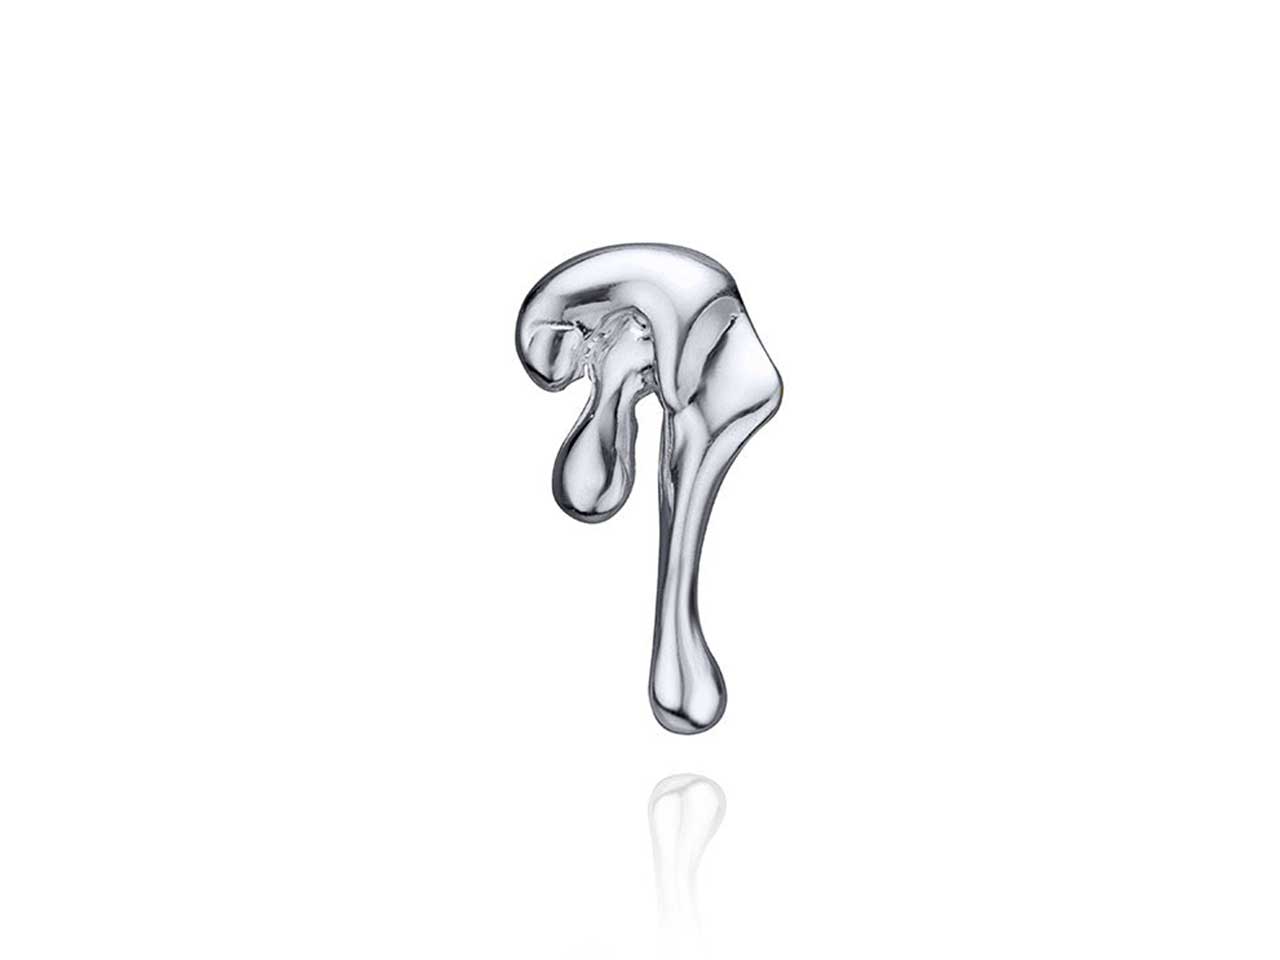 A silver jewellery single earring from Canadian brand Steff Eleoff.